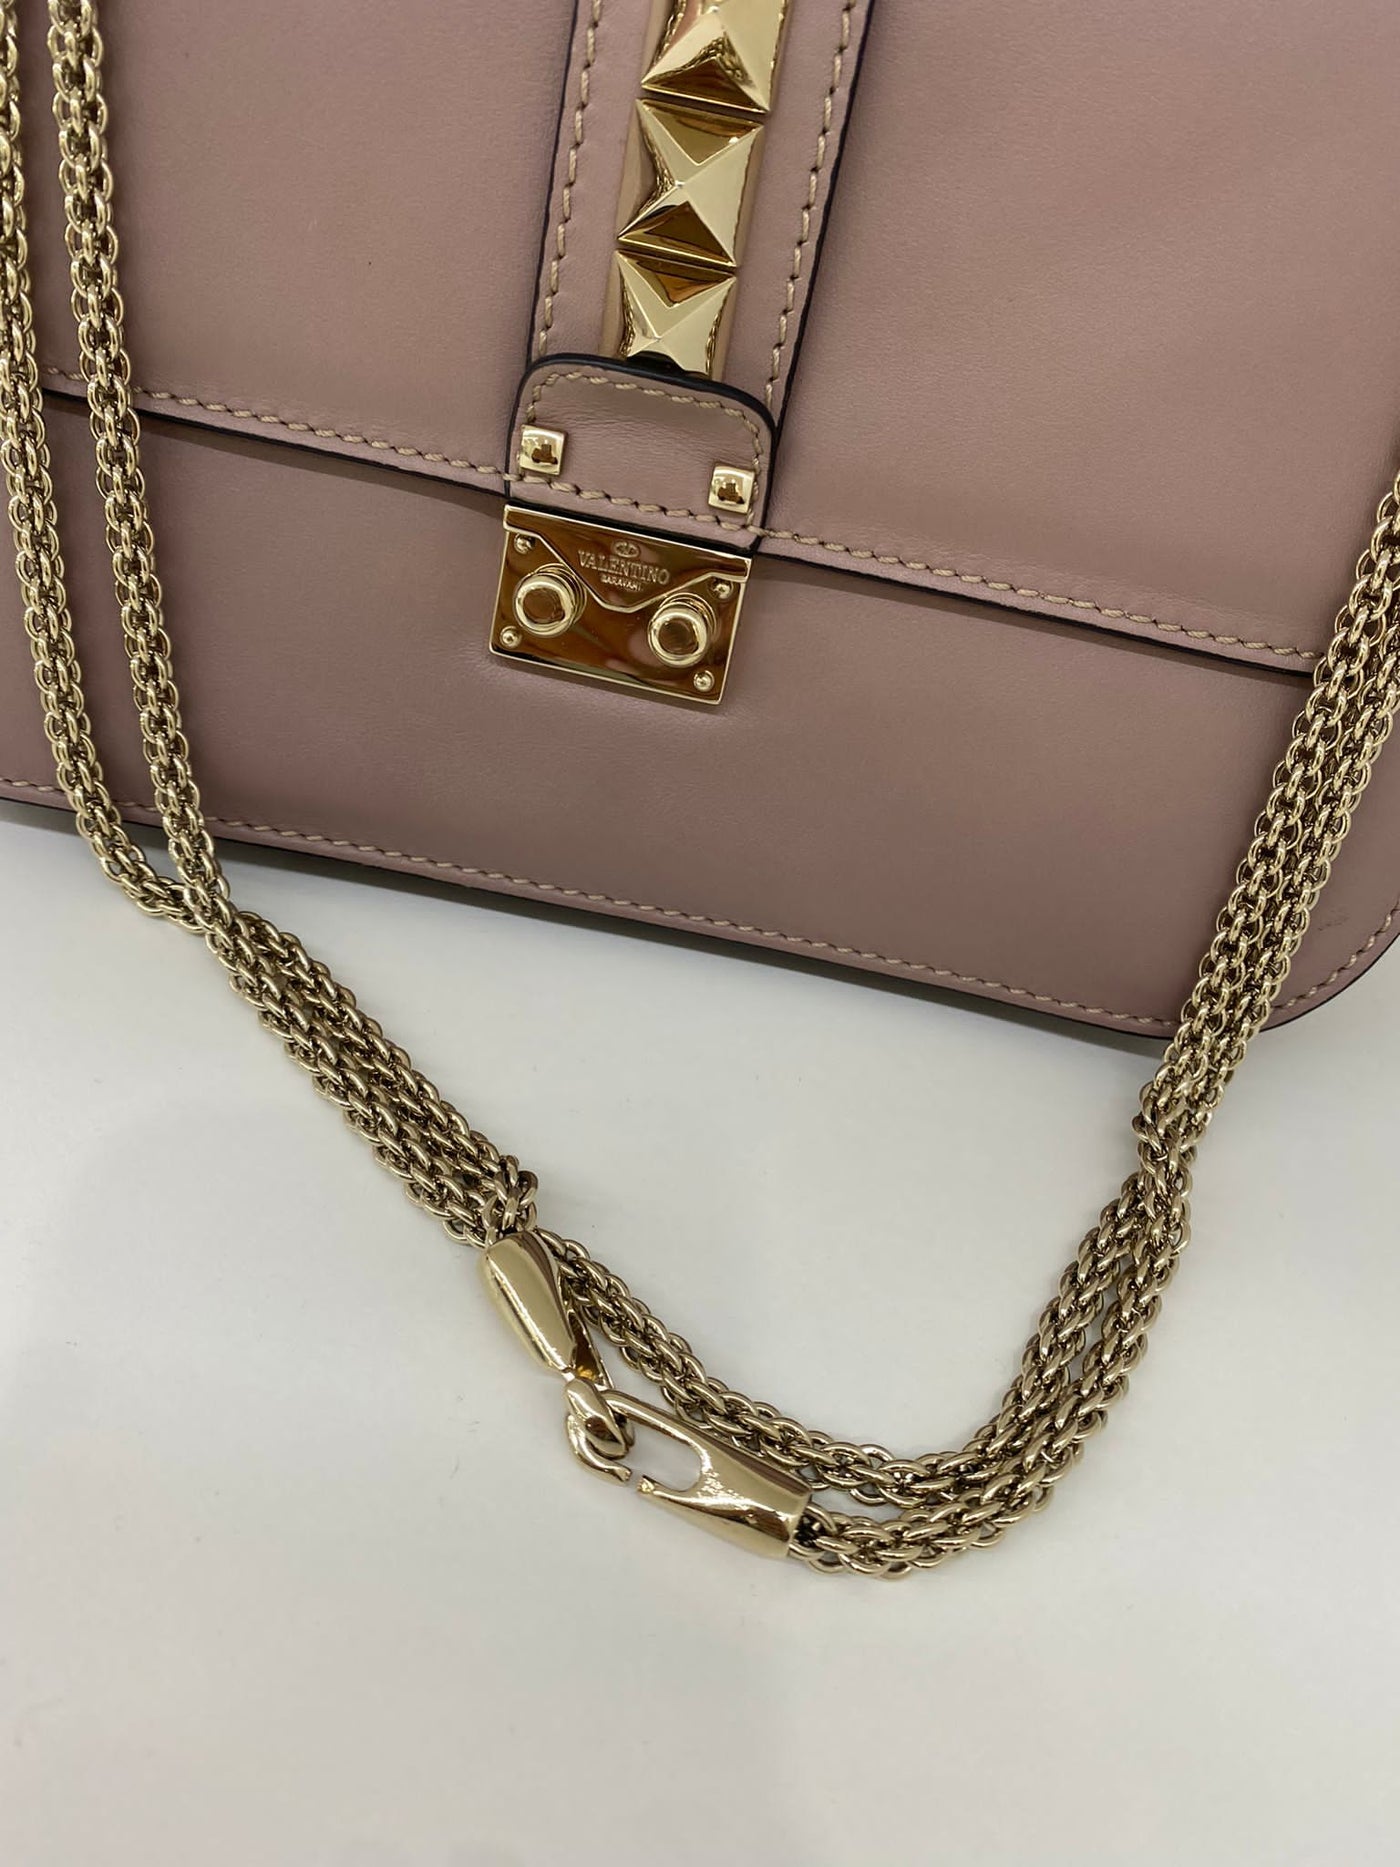 Valentino Rockstud Handbag - Light pink